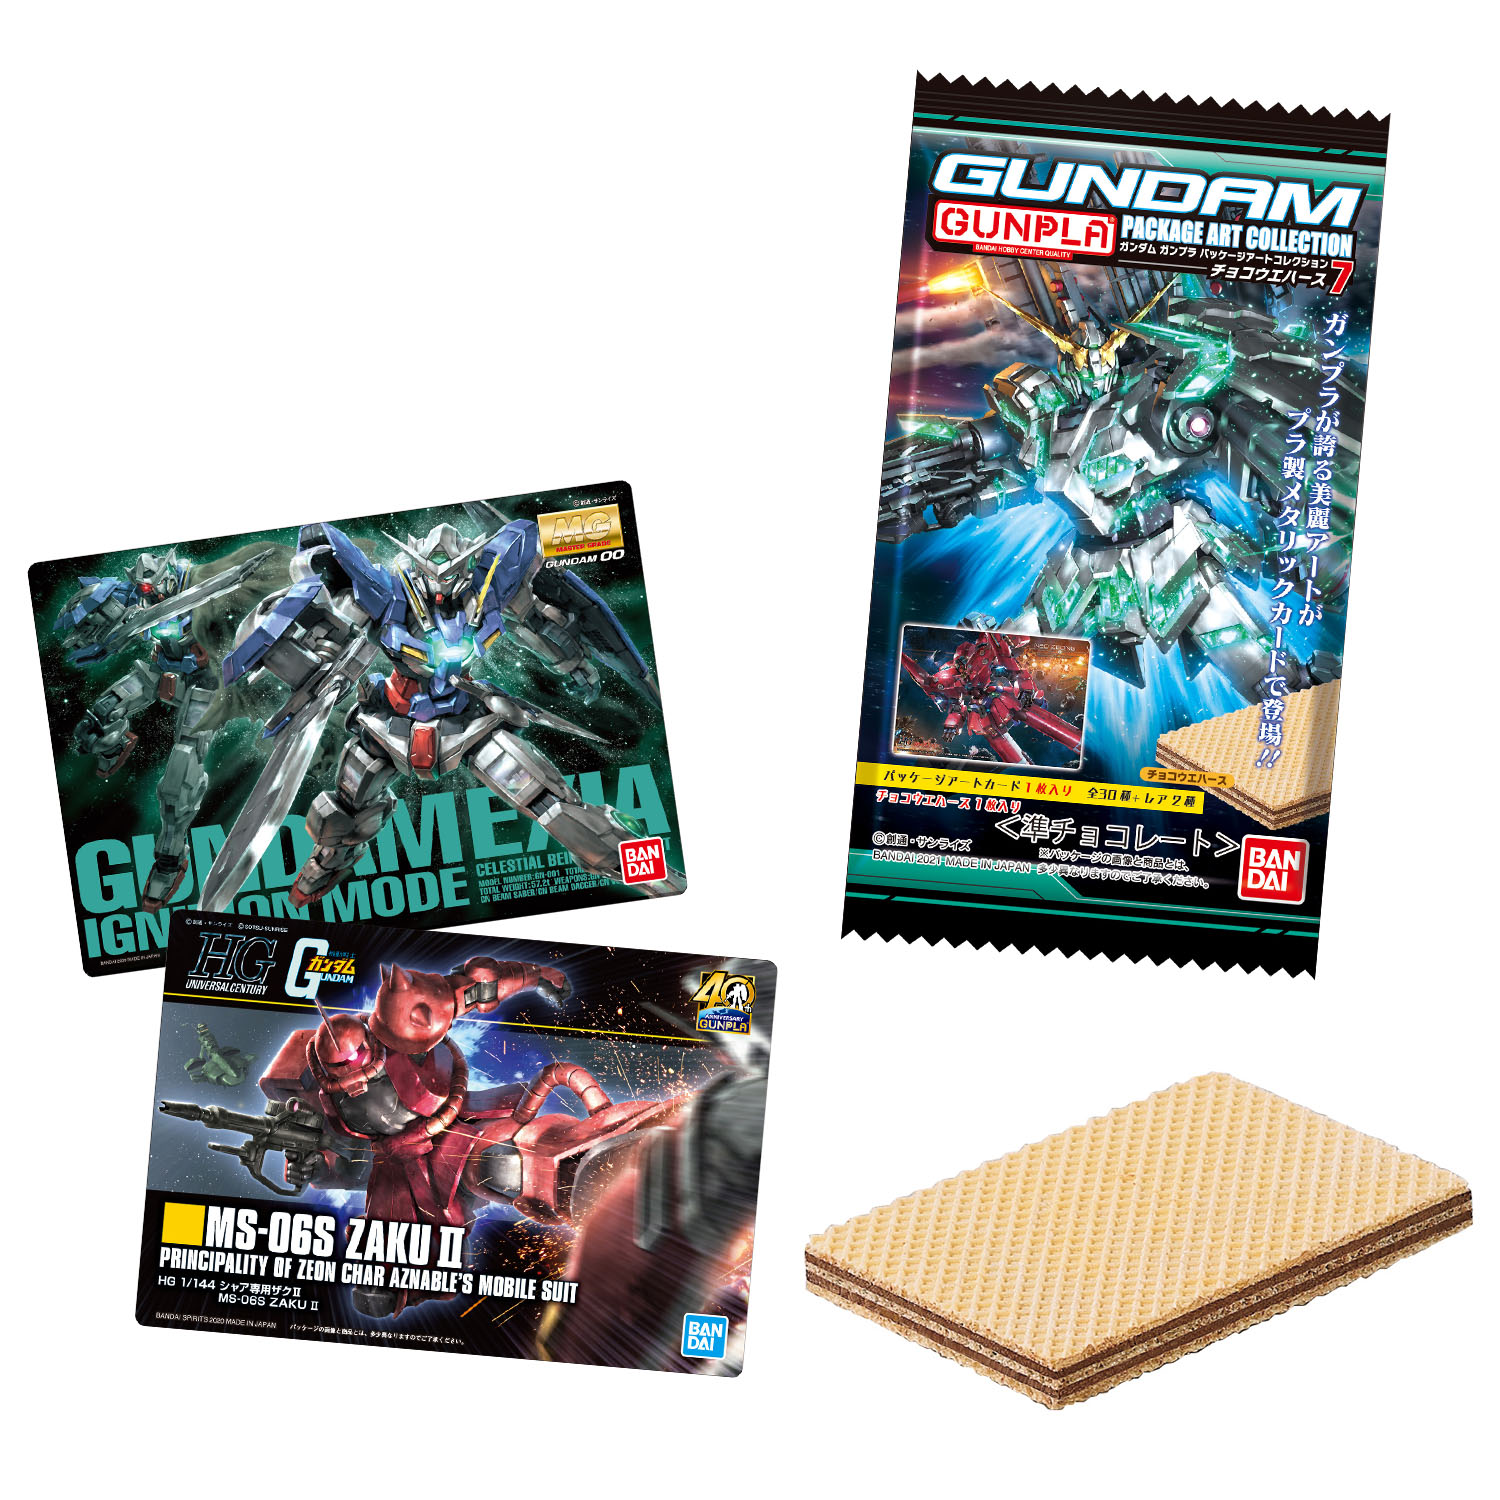 ガンプラの美麗パッケージコレクションカード第7弾 登場 Gundamガンプラパッケージアートコレクション チョコウエハース7 本日発売 コロコロオンライン コロコロコミック公式